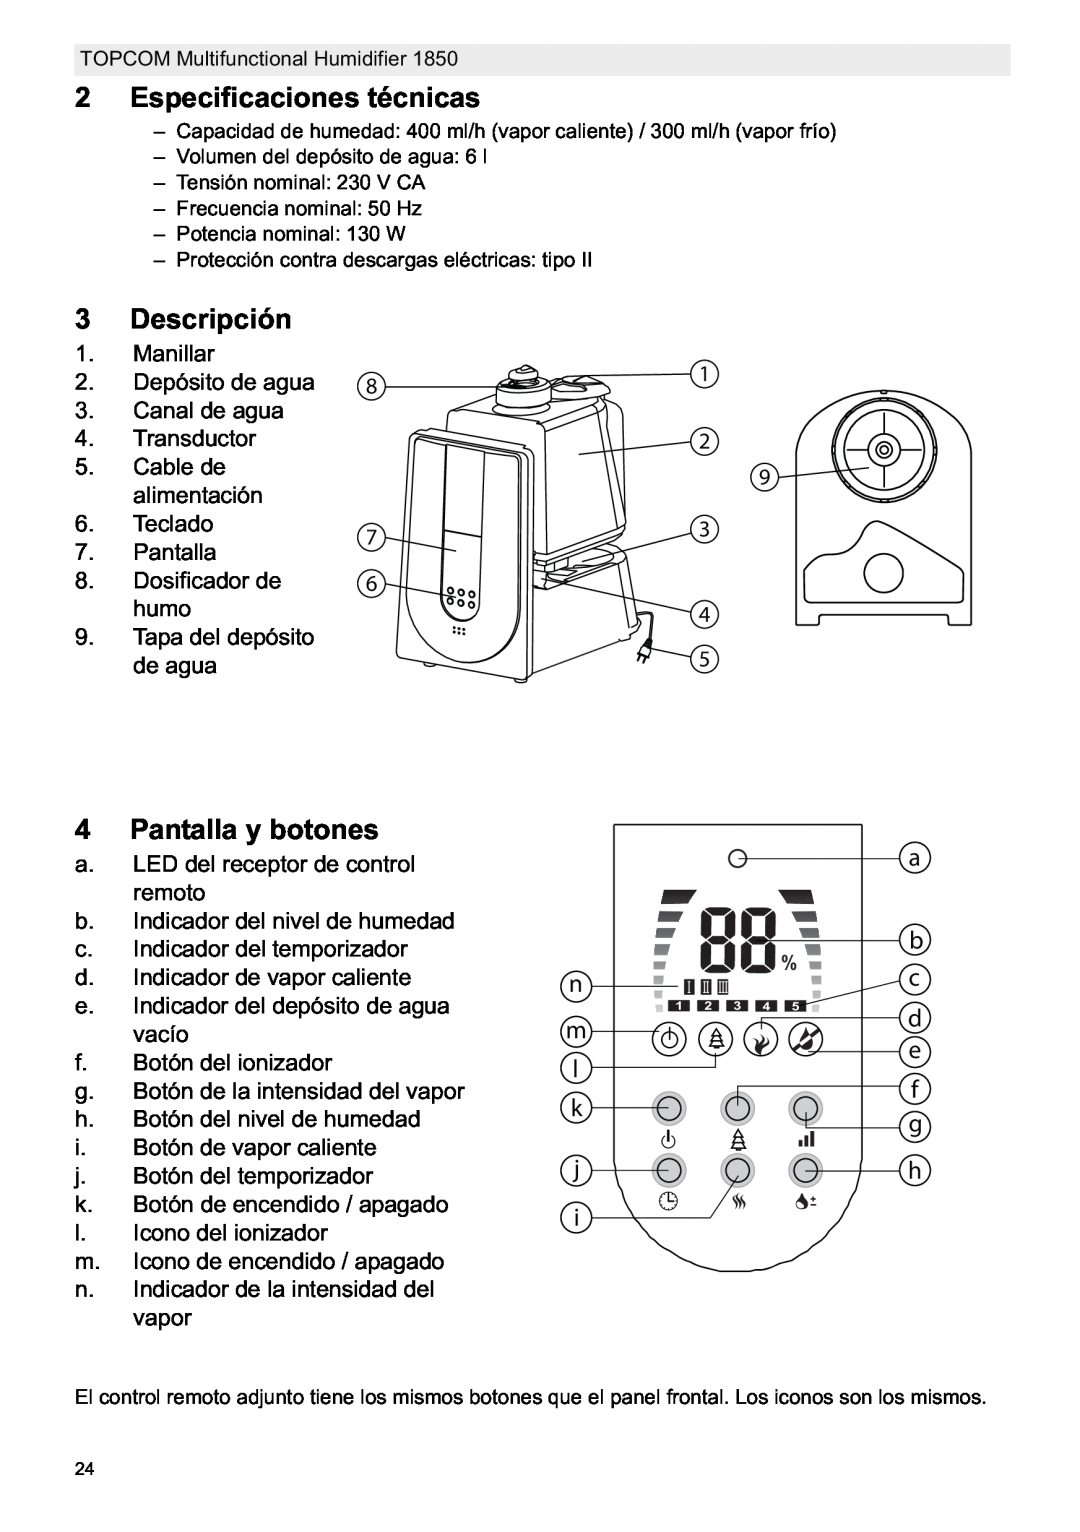 Topcom 1850 manual do utilizador Especificaciones técnicas, Descripción, Pantalla y botones 